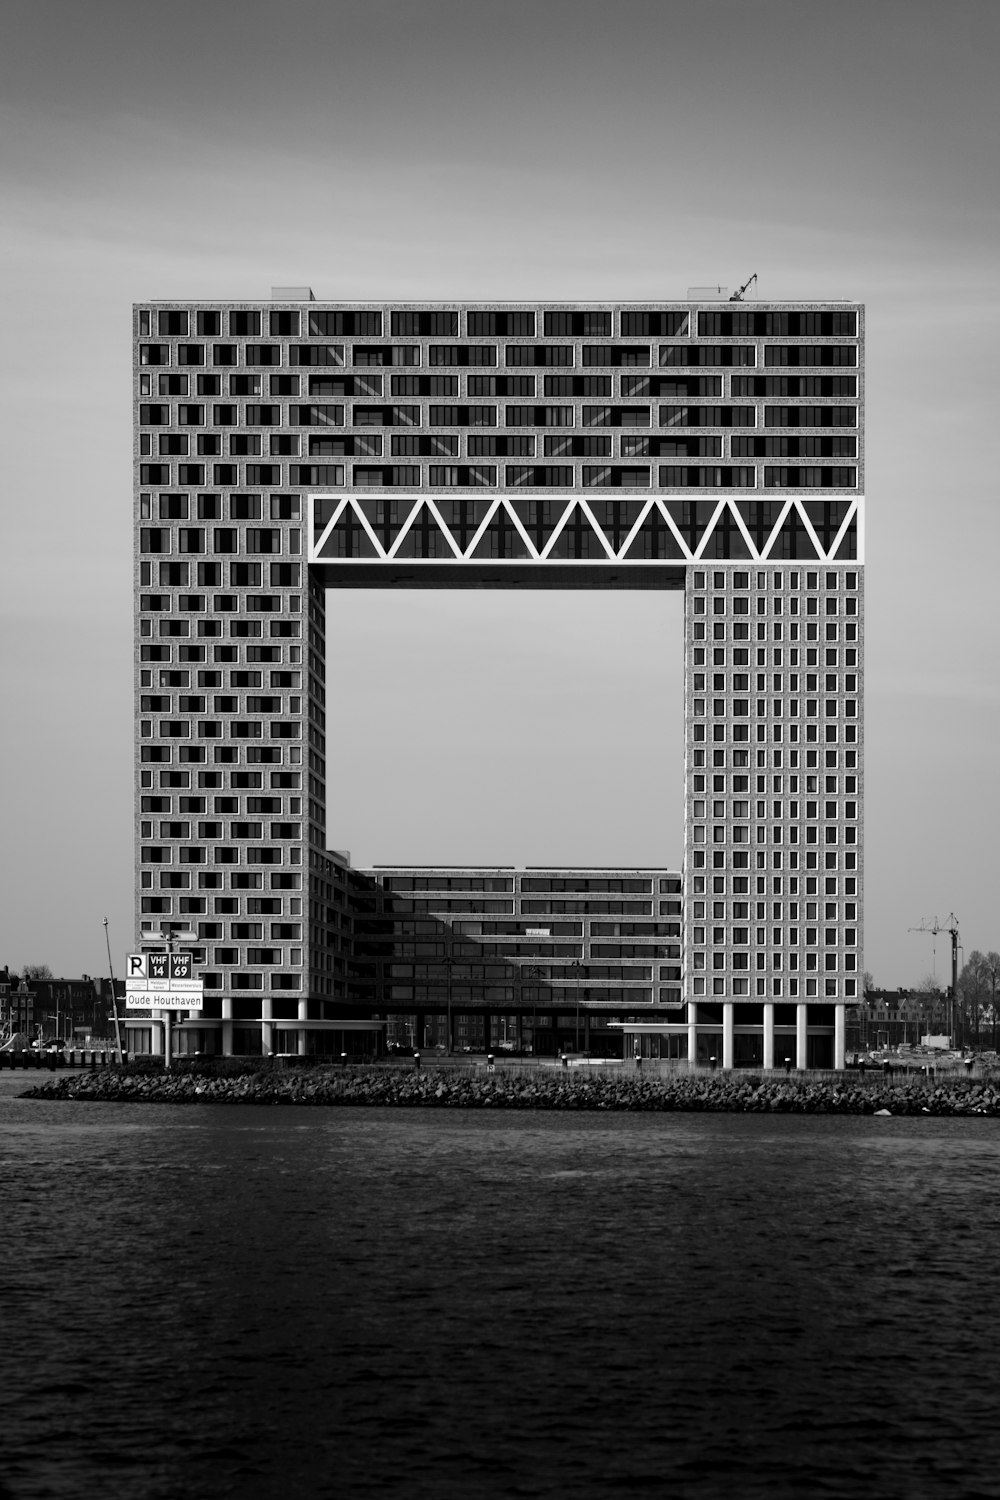 Fotografía en escala de grises de un edificio de hormigón